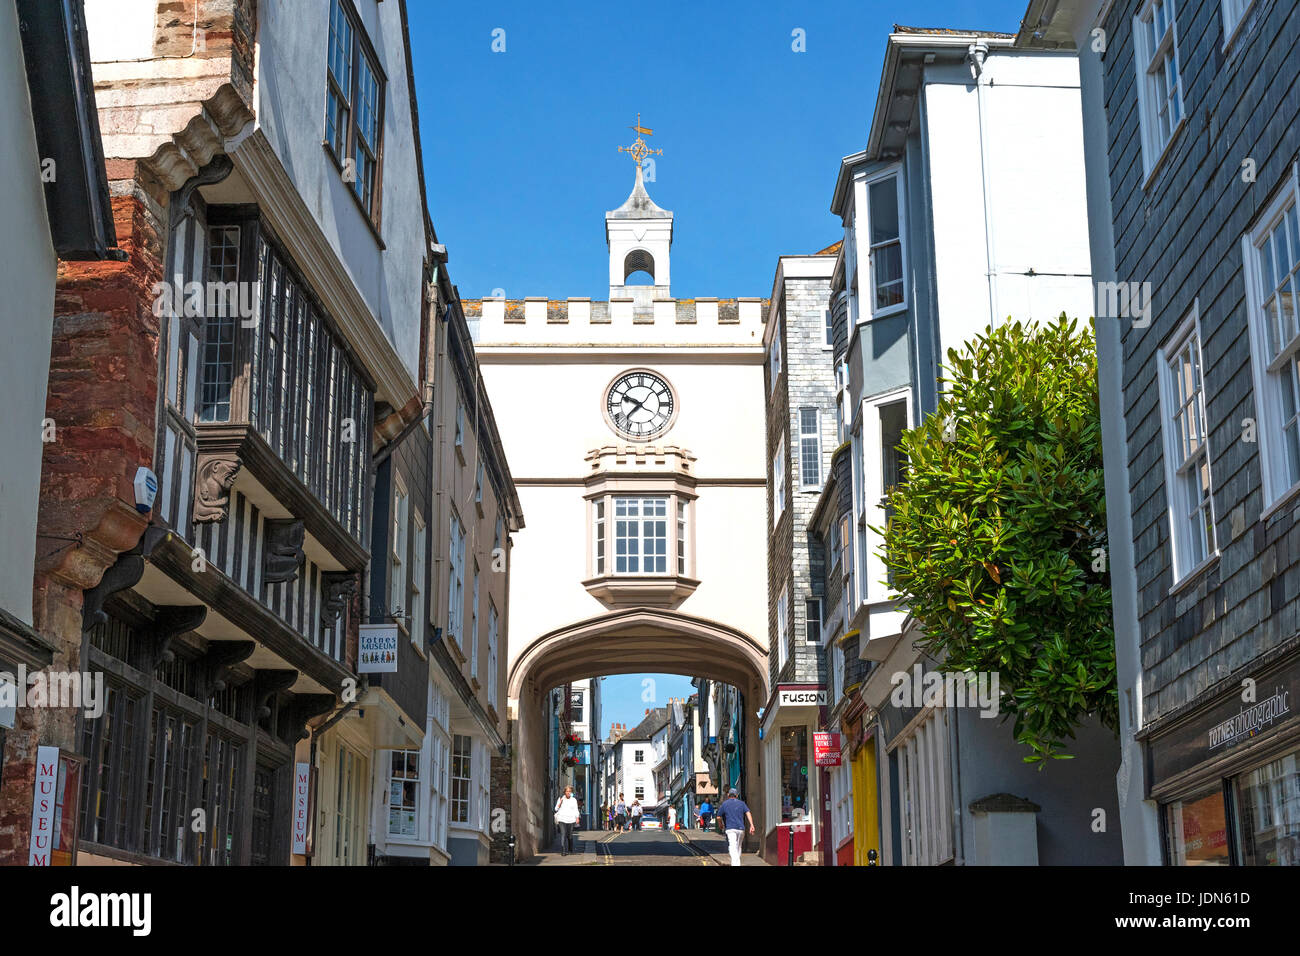 Eastgate historique dans hight street, TOTNES, South Hams, Devon, Angleterre, Grande-Bretagne, Royaume-Uni. Banque D'Images